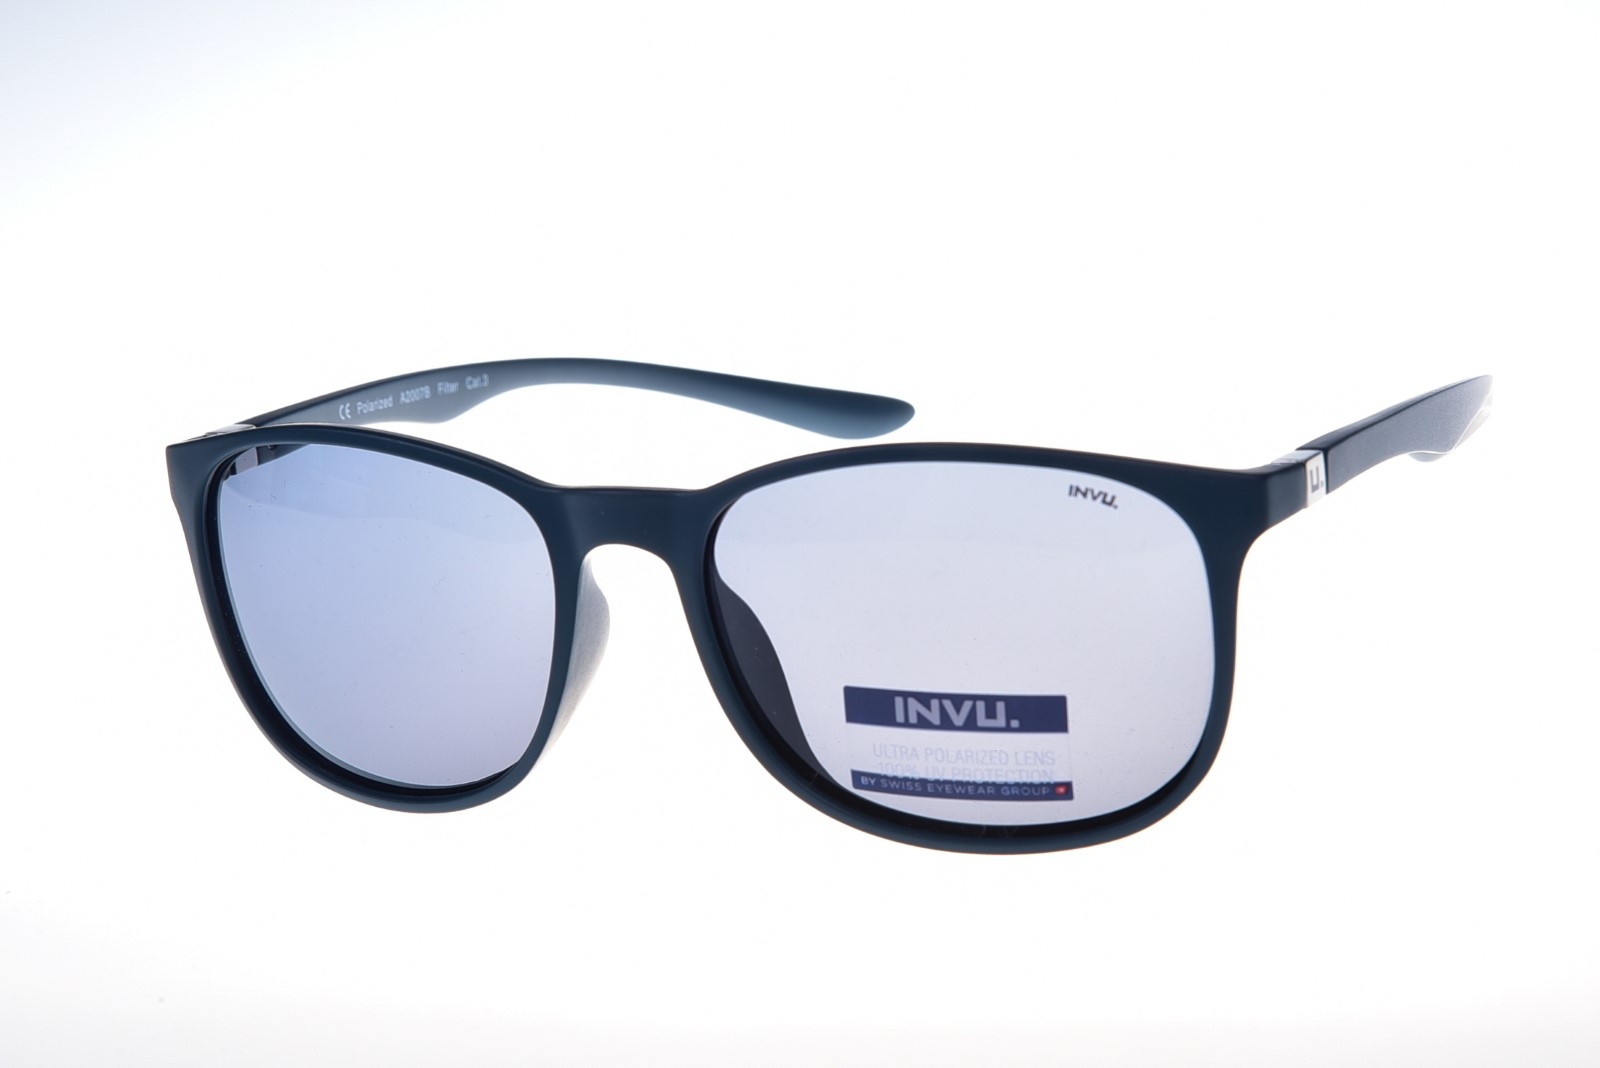 INVU. Active A2007B - Pánske slnečné okuliare